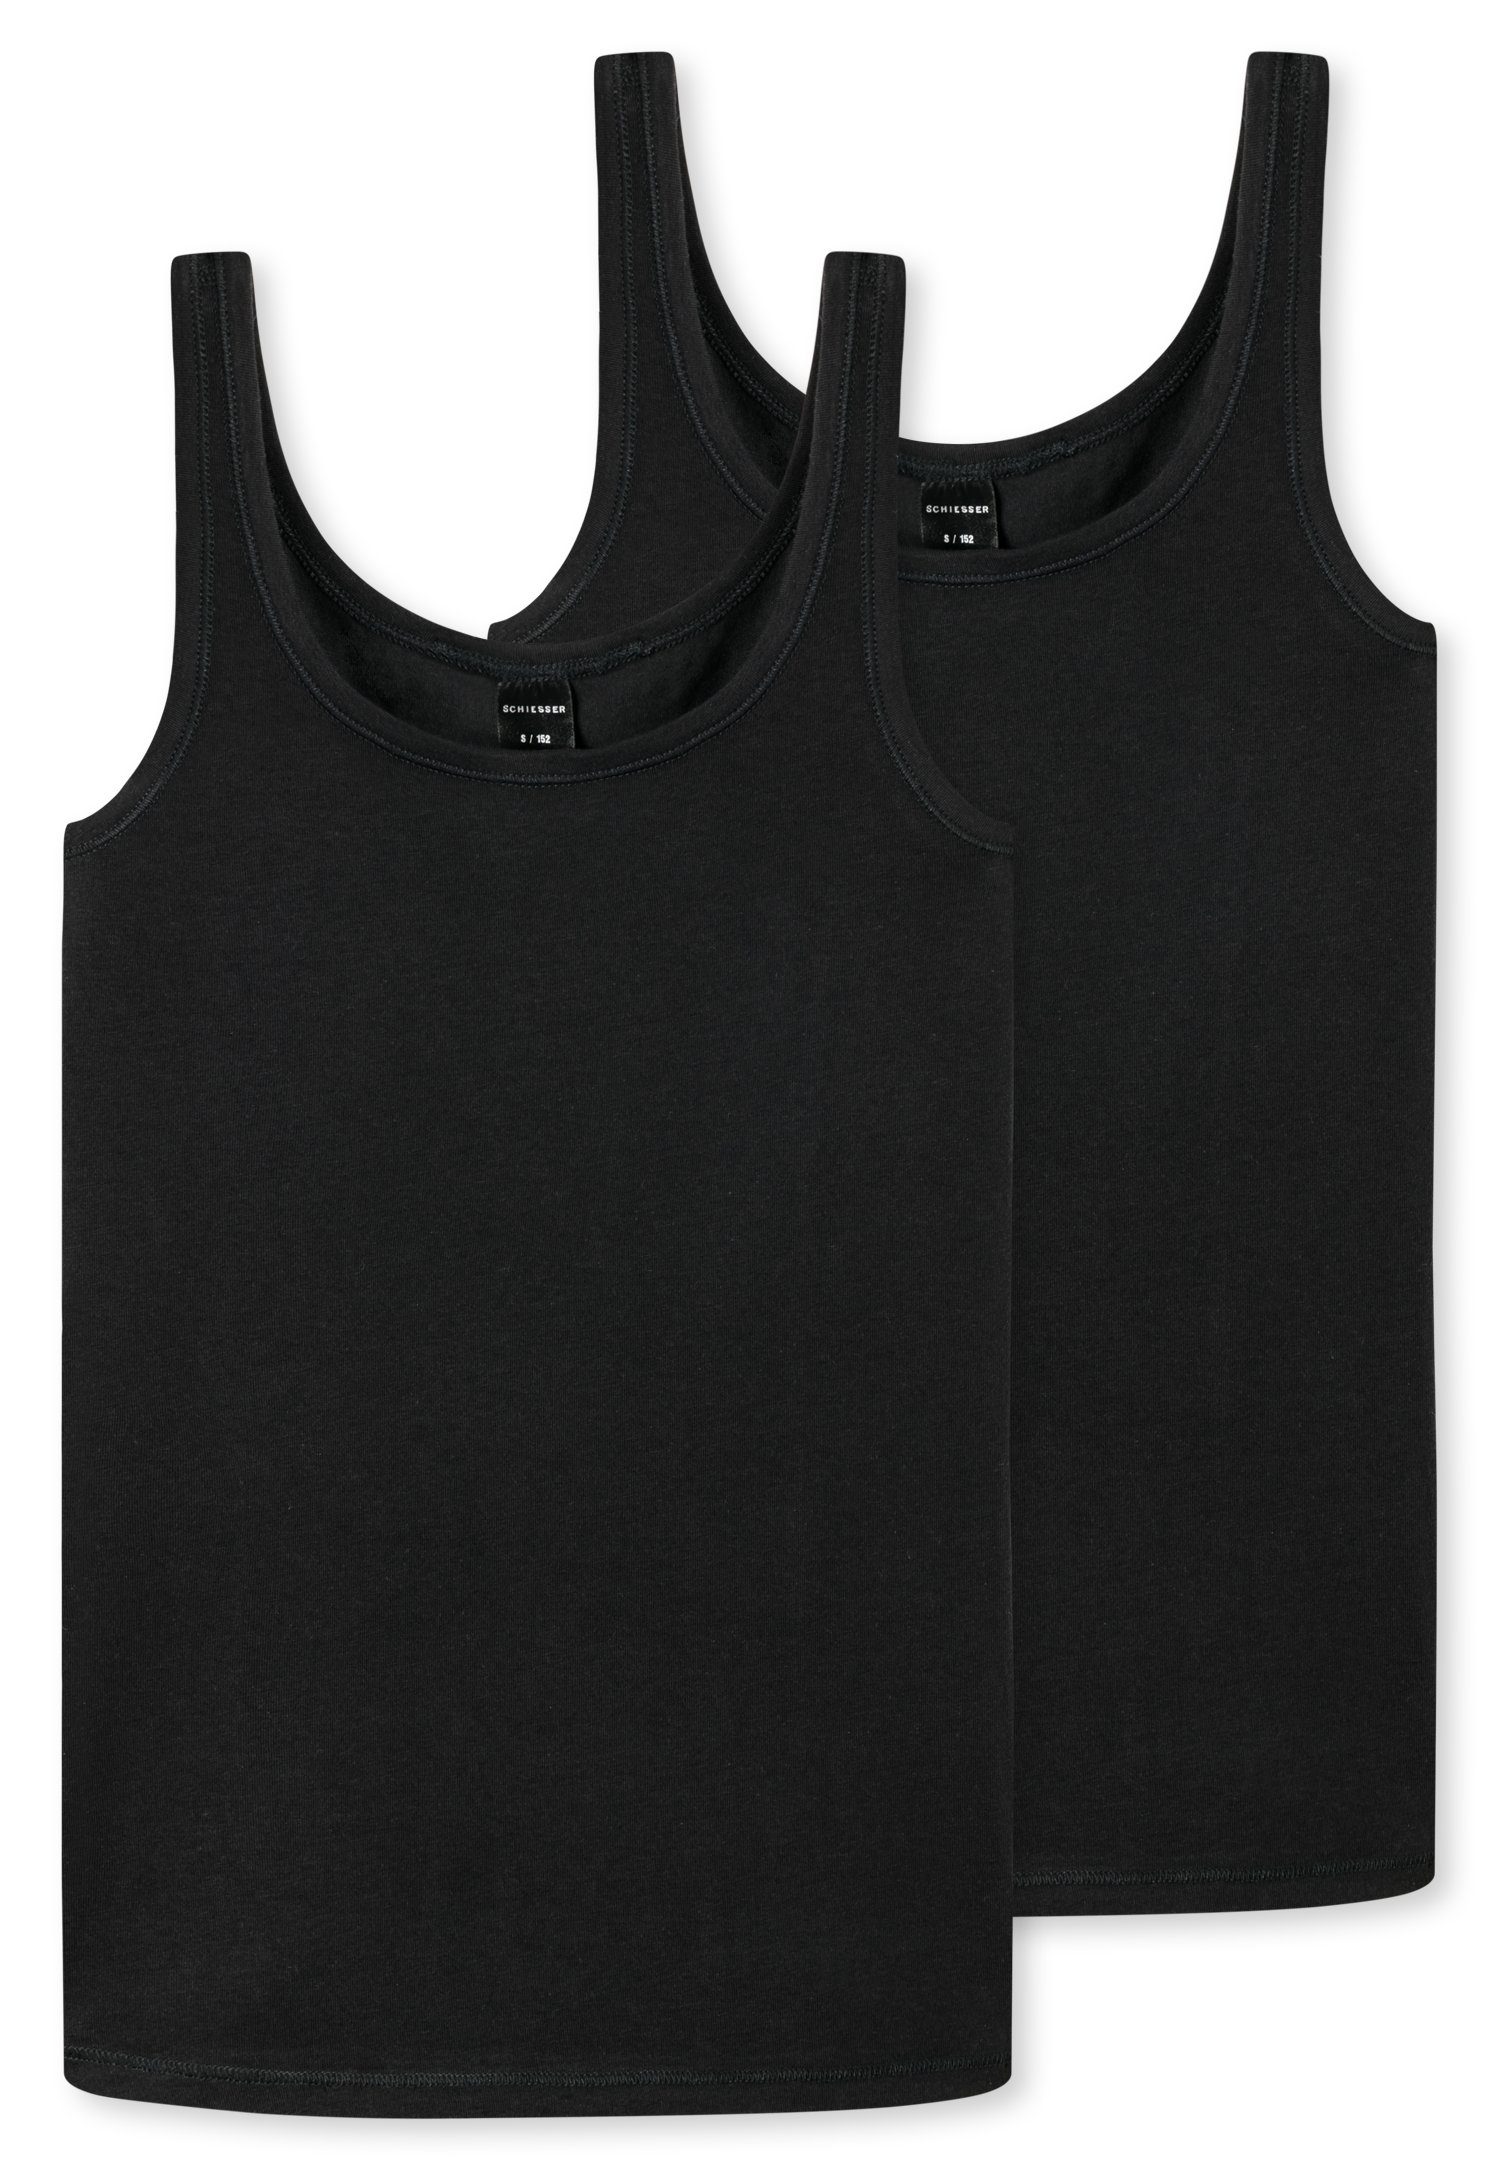 Schiesser Unterhemd (2er-Pack) mit breiten Trägern schwarz | Unterhemden